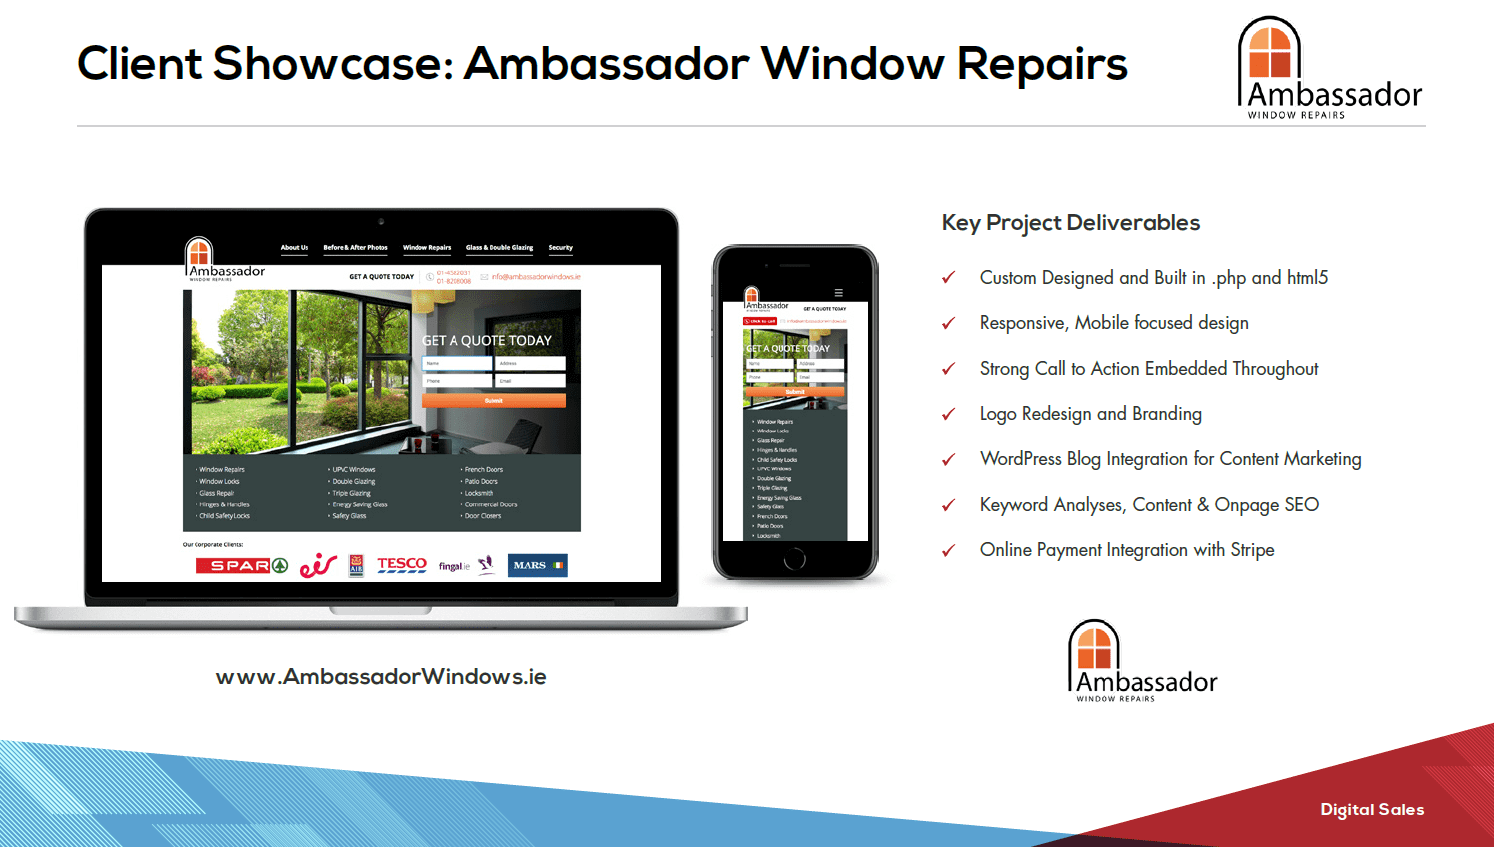 www.AmbassadorWindows.ie